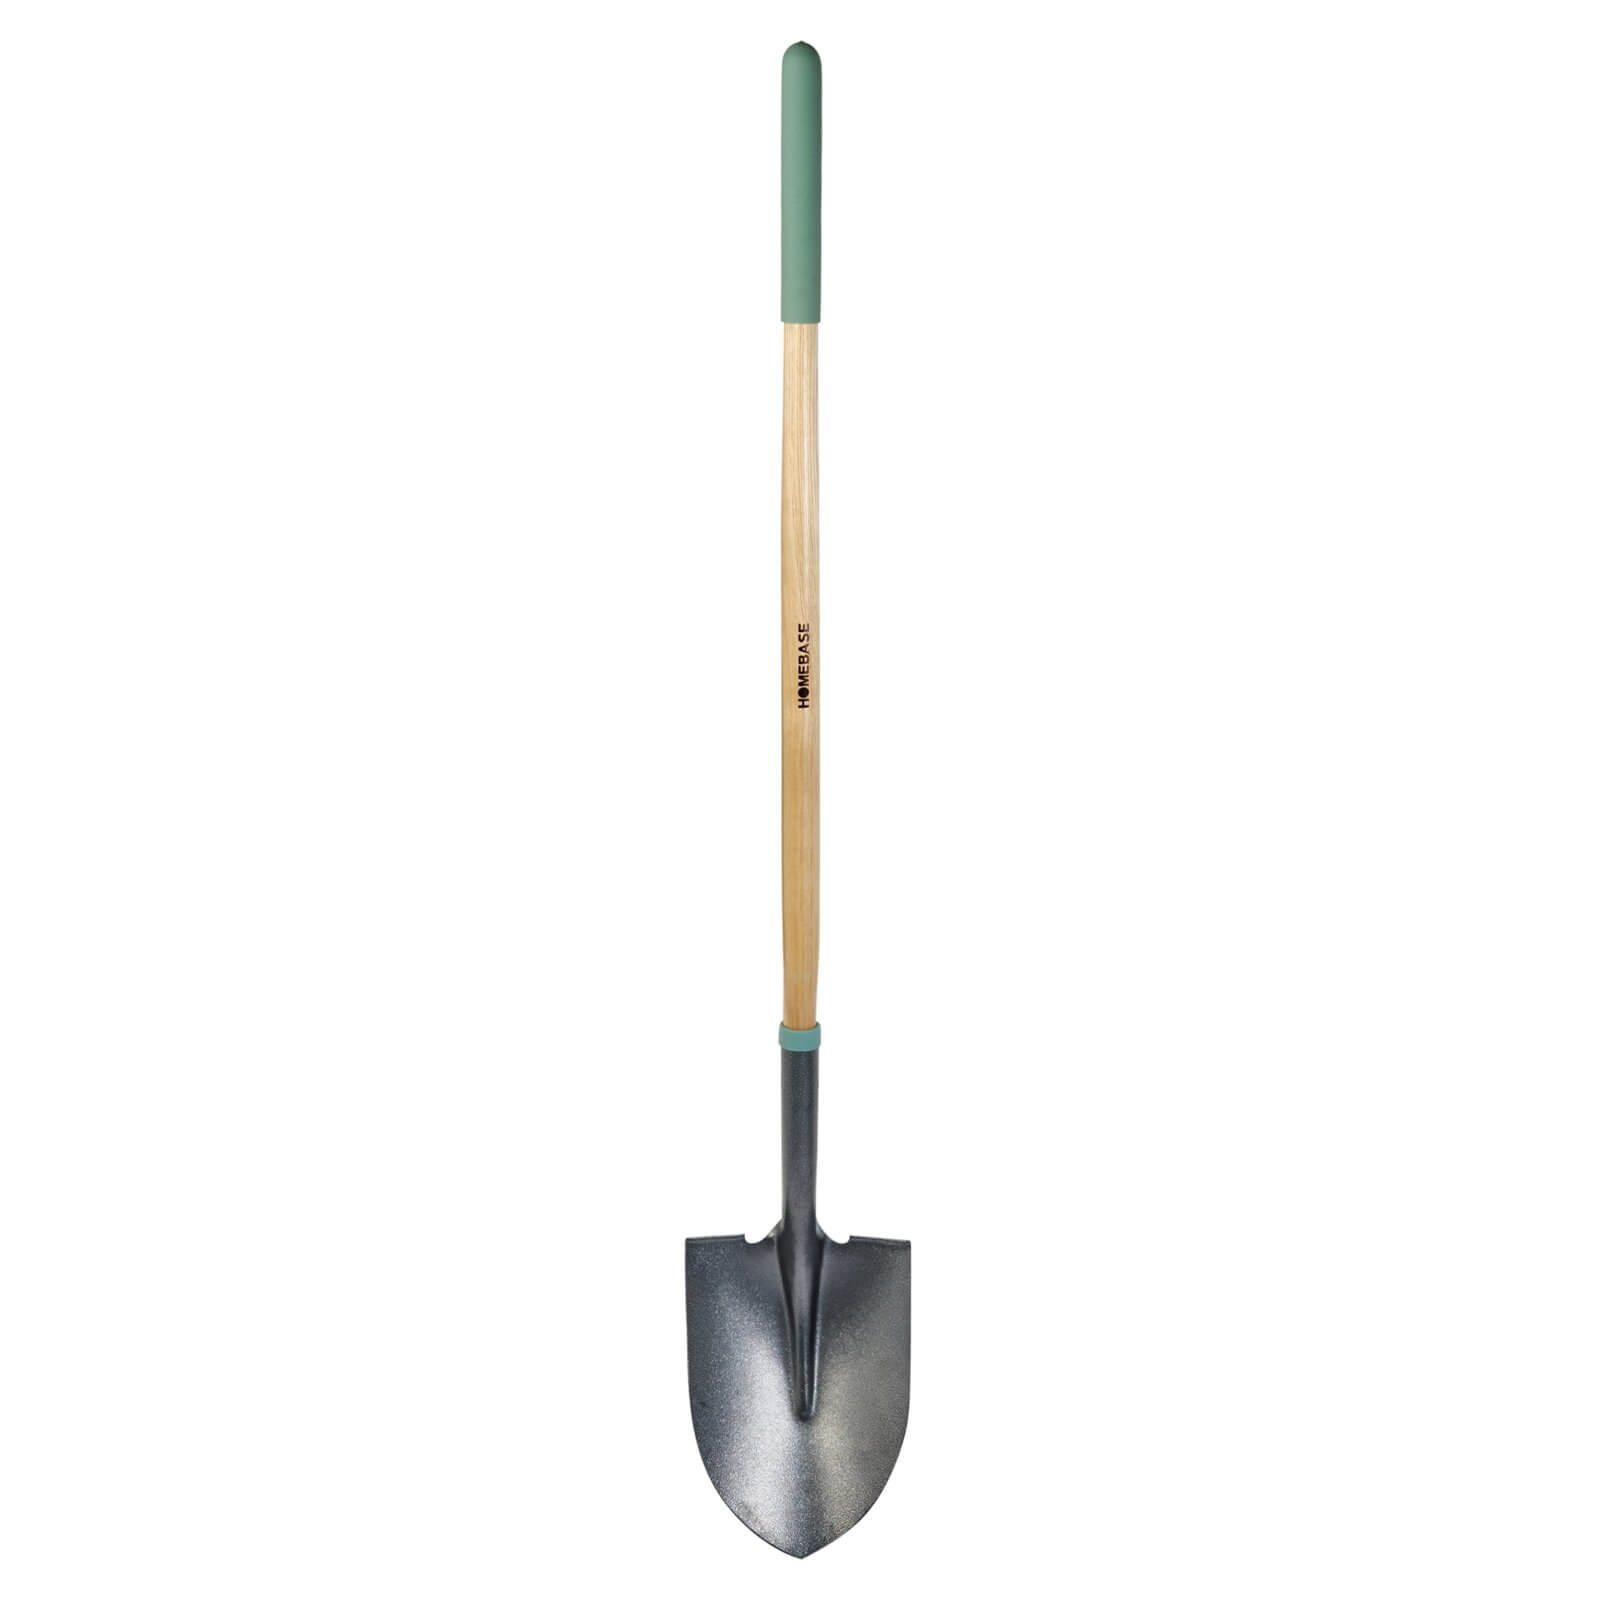 Homebase Long Handle Irish Shovel